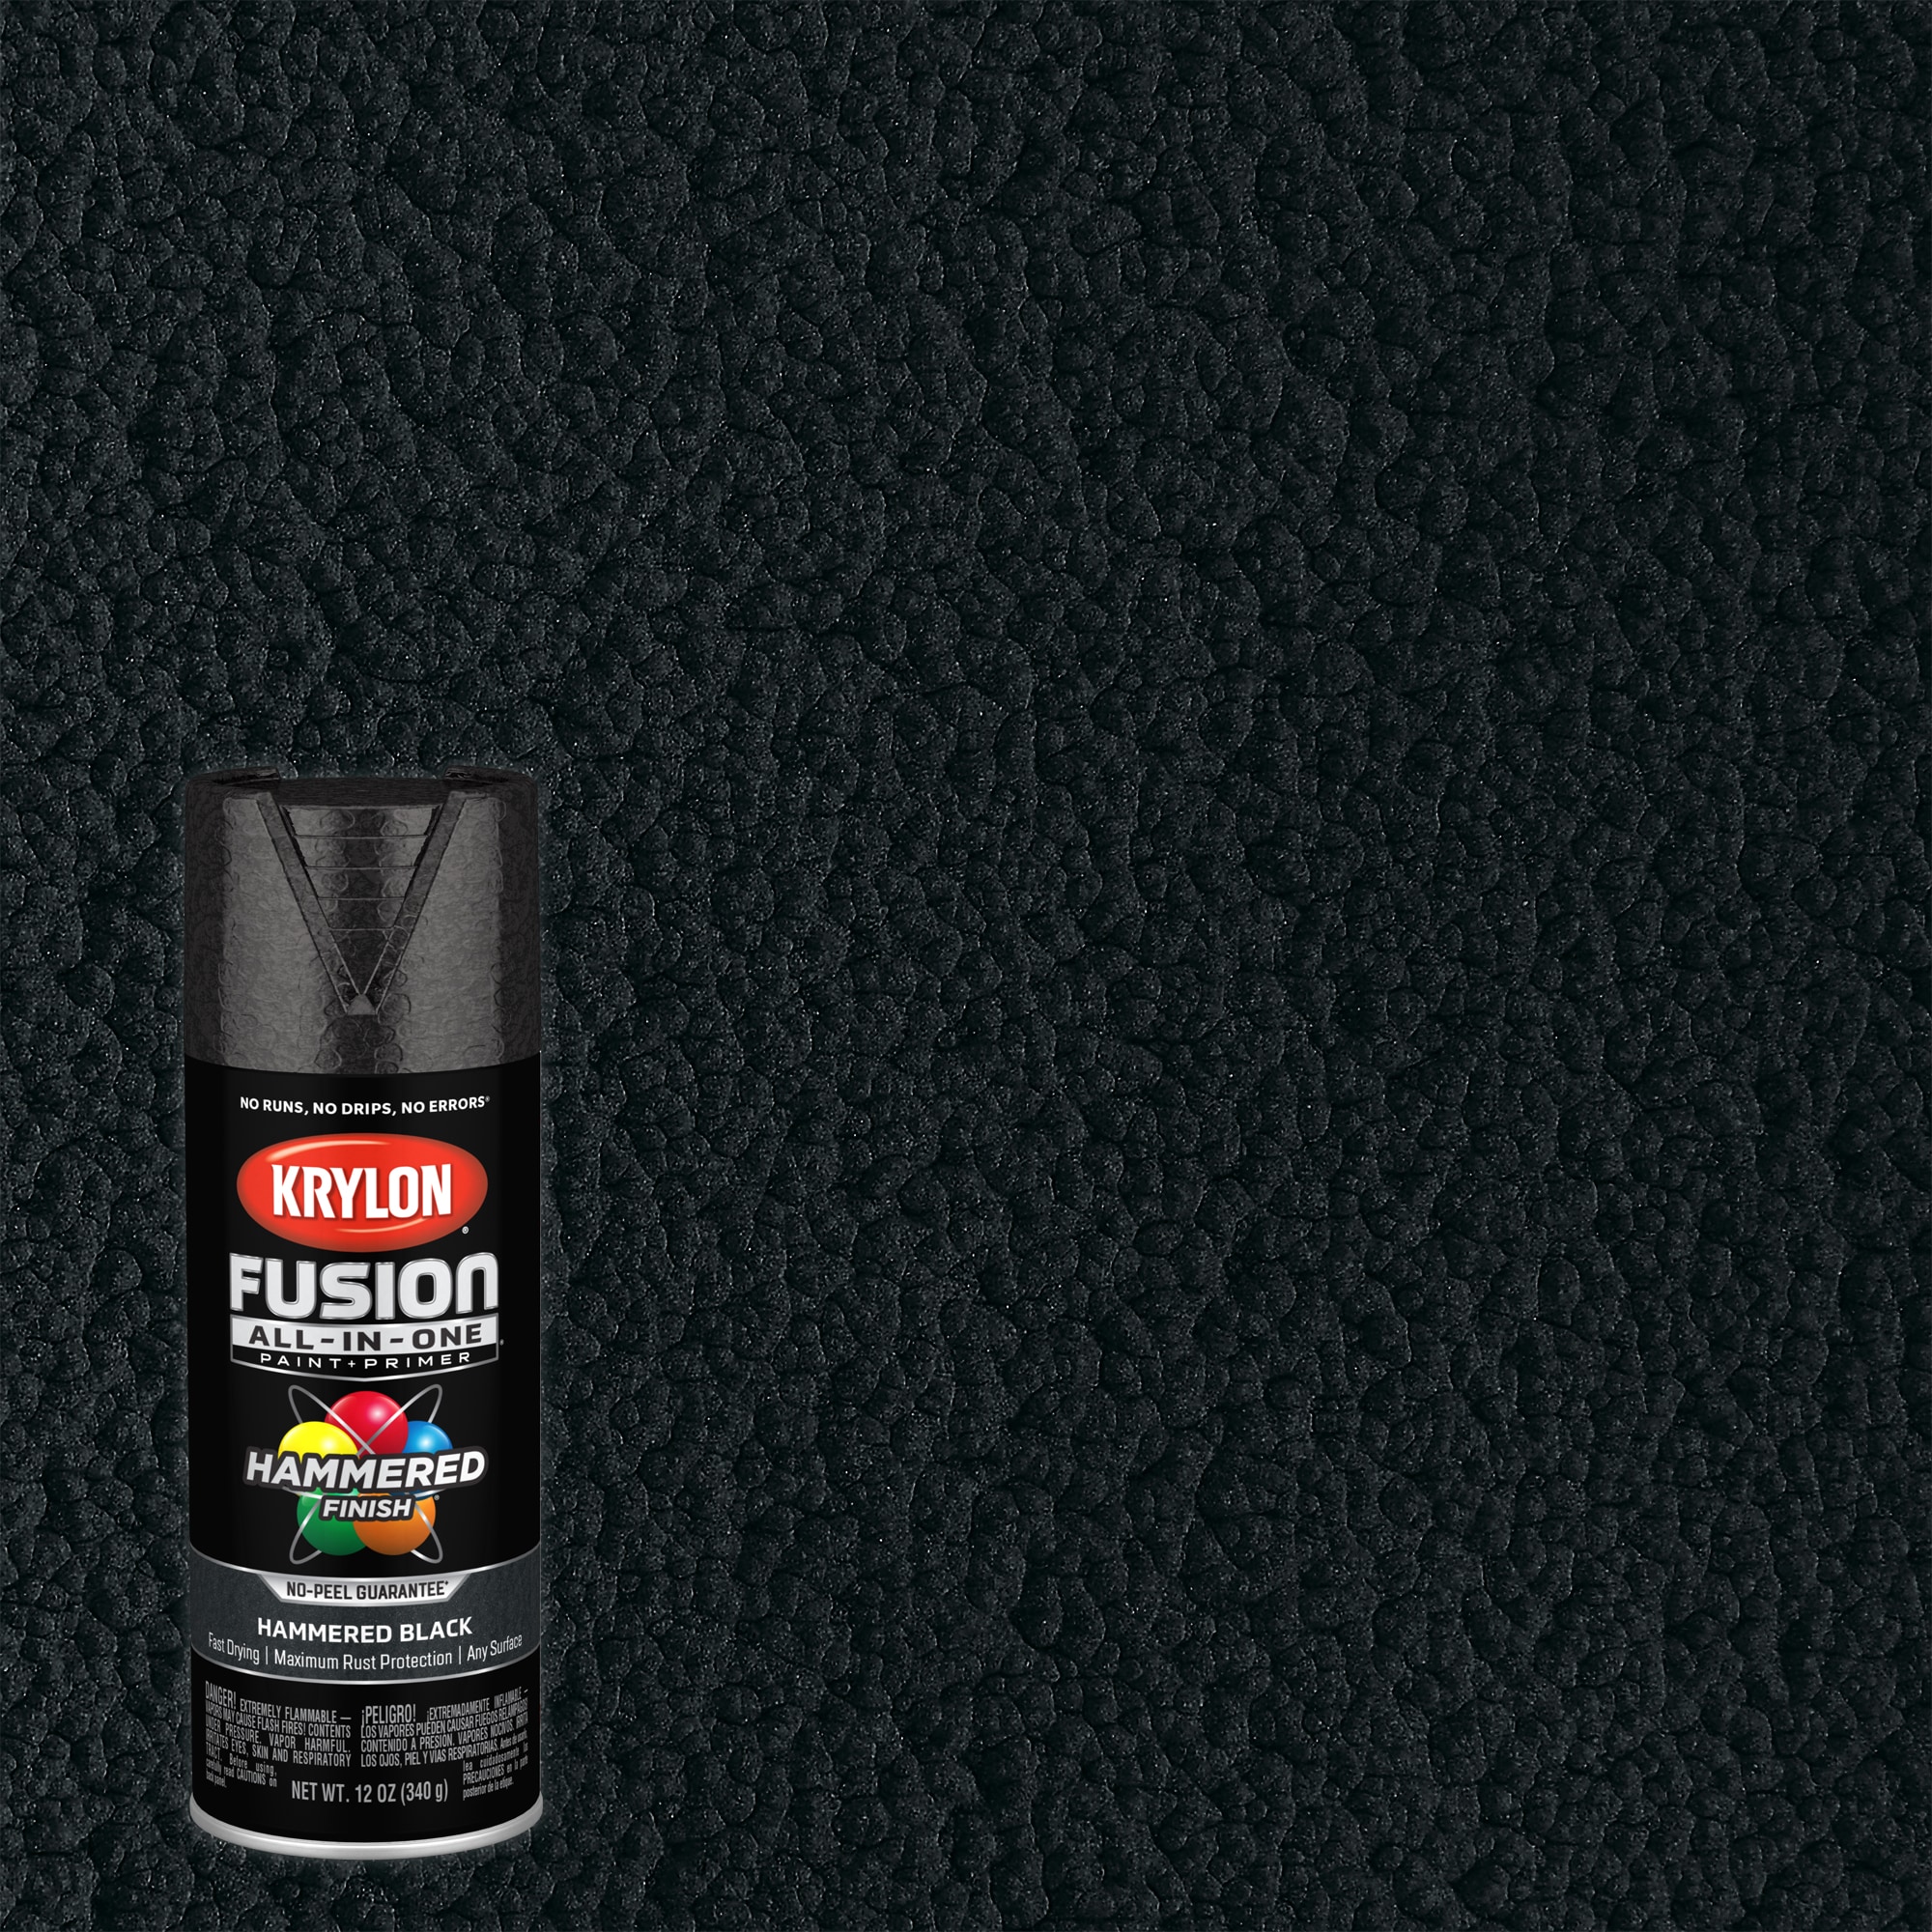 Rust-Oleum Hammered Matte Black Spray Paint 12 oz